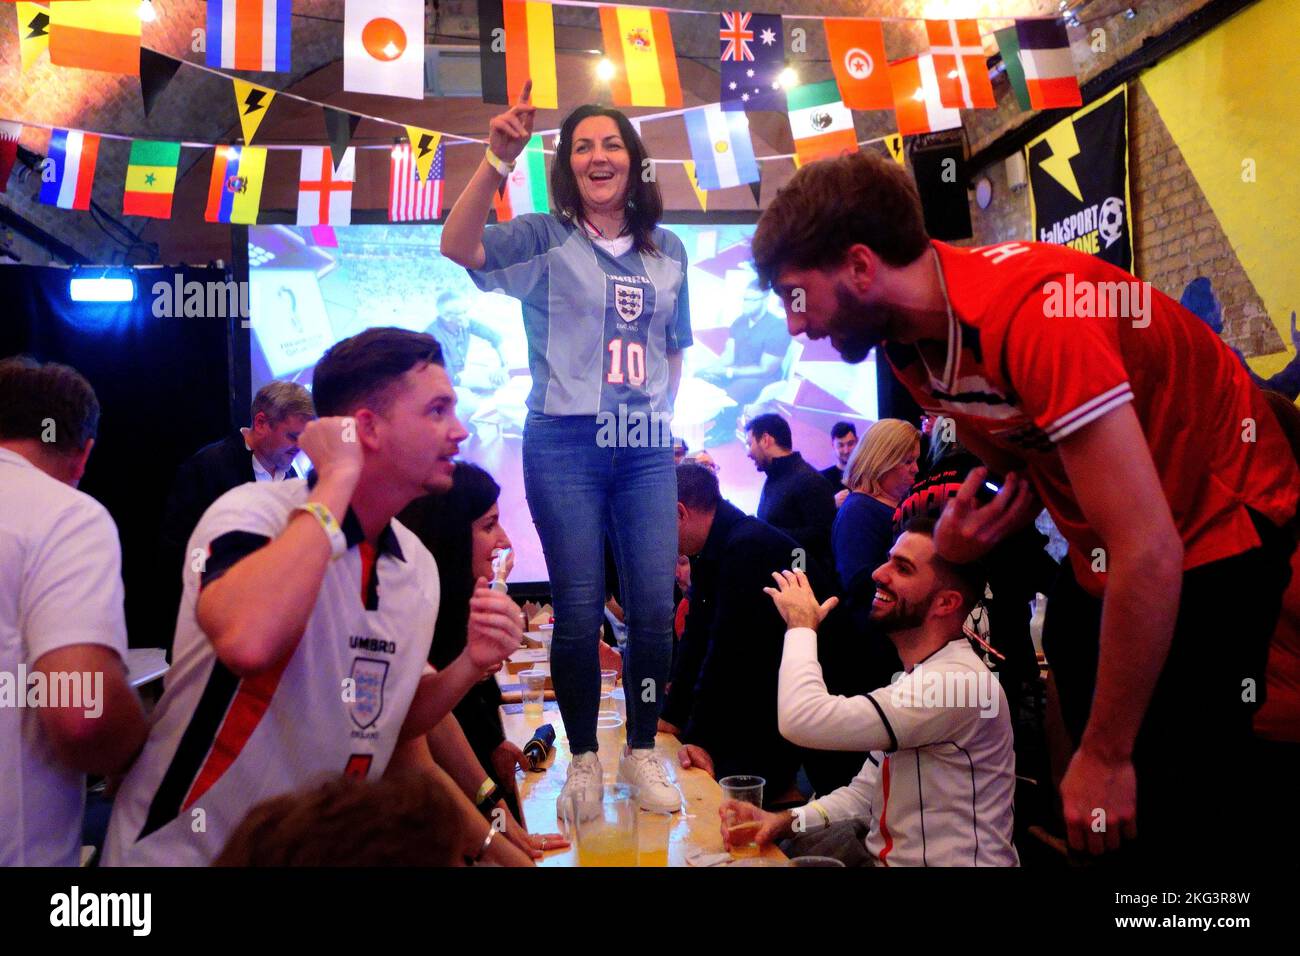 England-Fans feiern in einer Fanzone in Waterloo, London, während des Spiels England gegen Iran bei der FIFA Weltmeisterschaft 2022. Bilddatum: Montag, 21. November 2022. Stockfoto